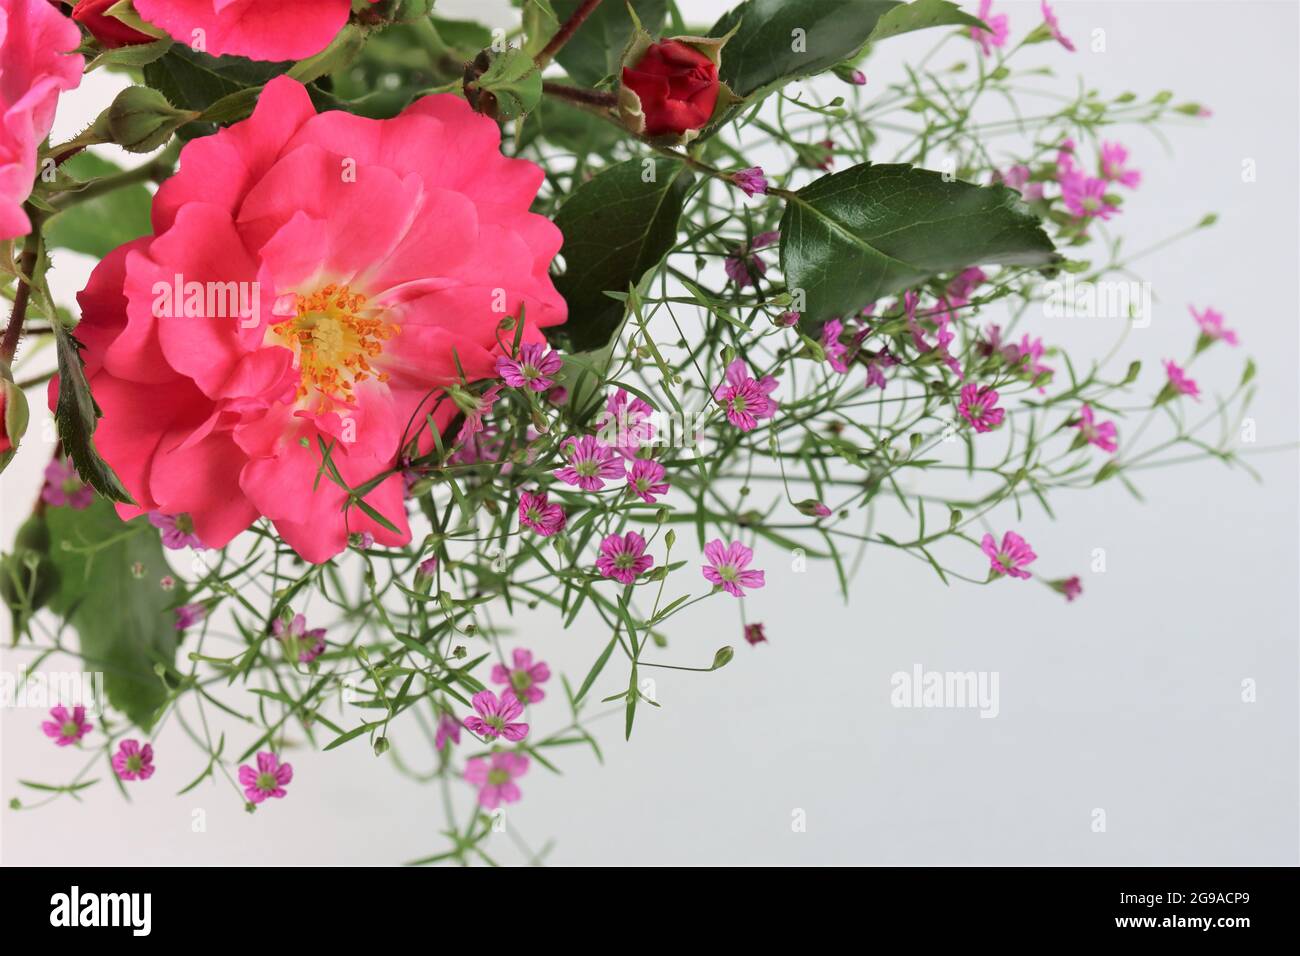 Eine Blüte der Rose `Heidetraum´ liegt zusammen mit rosa Schleierkraut auf einem weißen Untergrund Banque D'Images